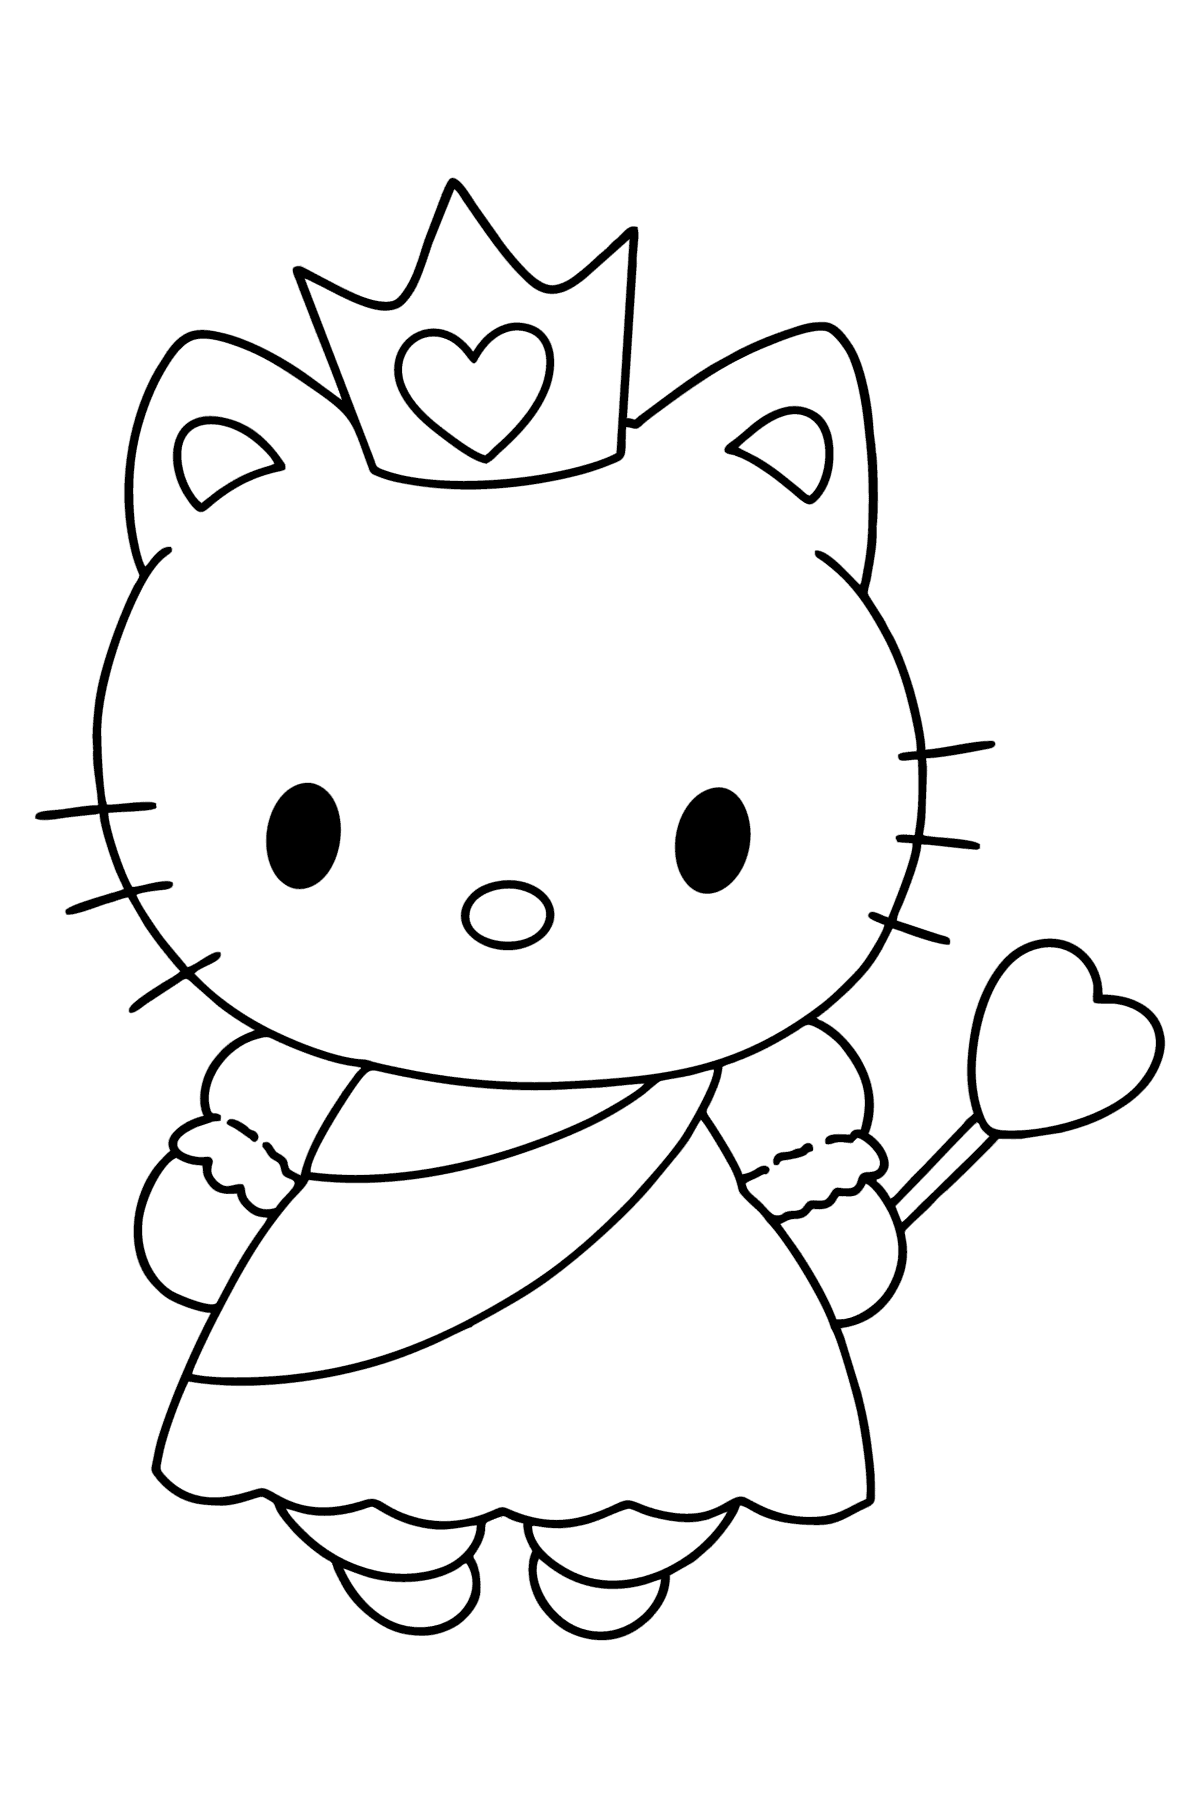 Tegning til fargelegging Hello Kitty en prinsesse - Tegninger til fargelegging for barn